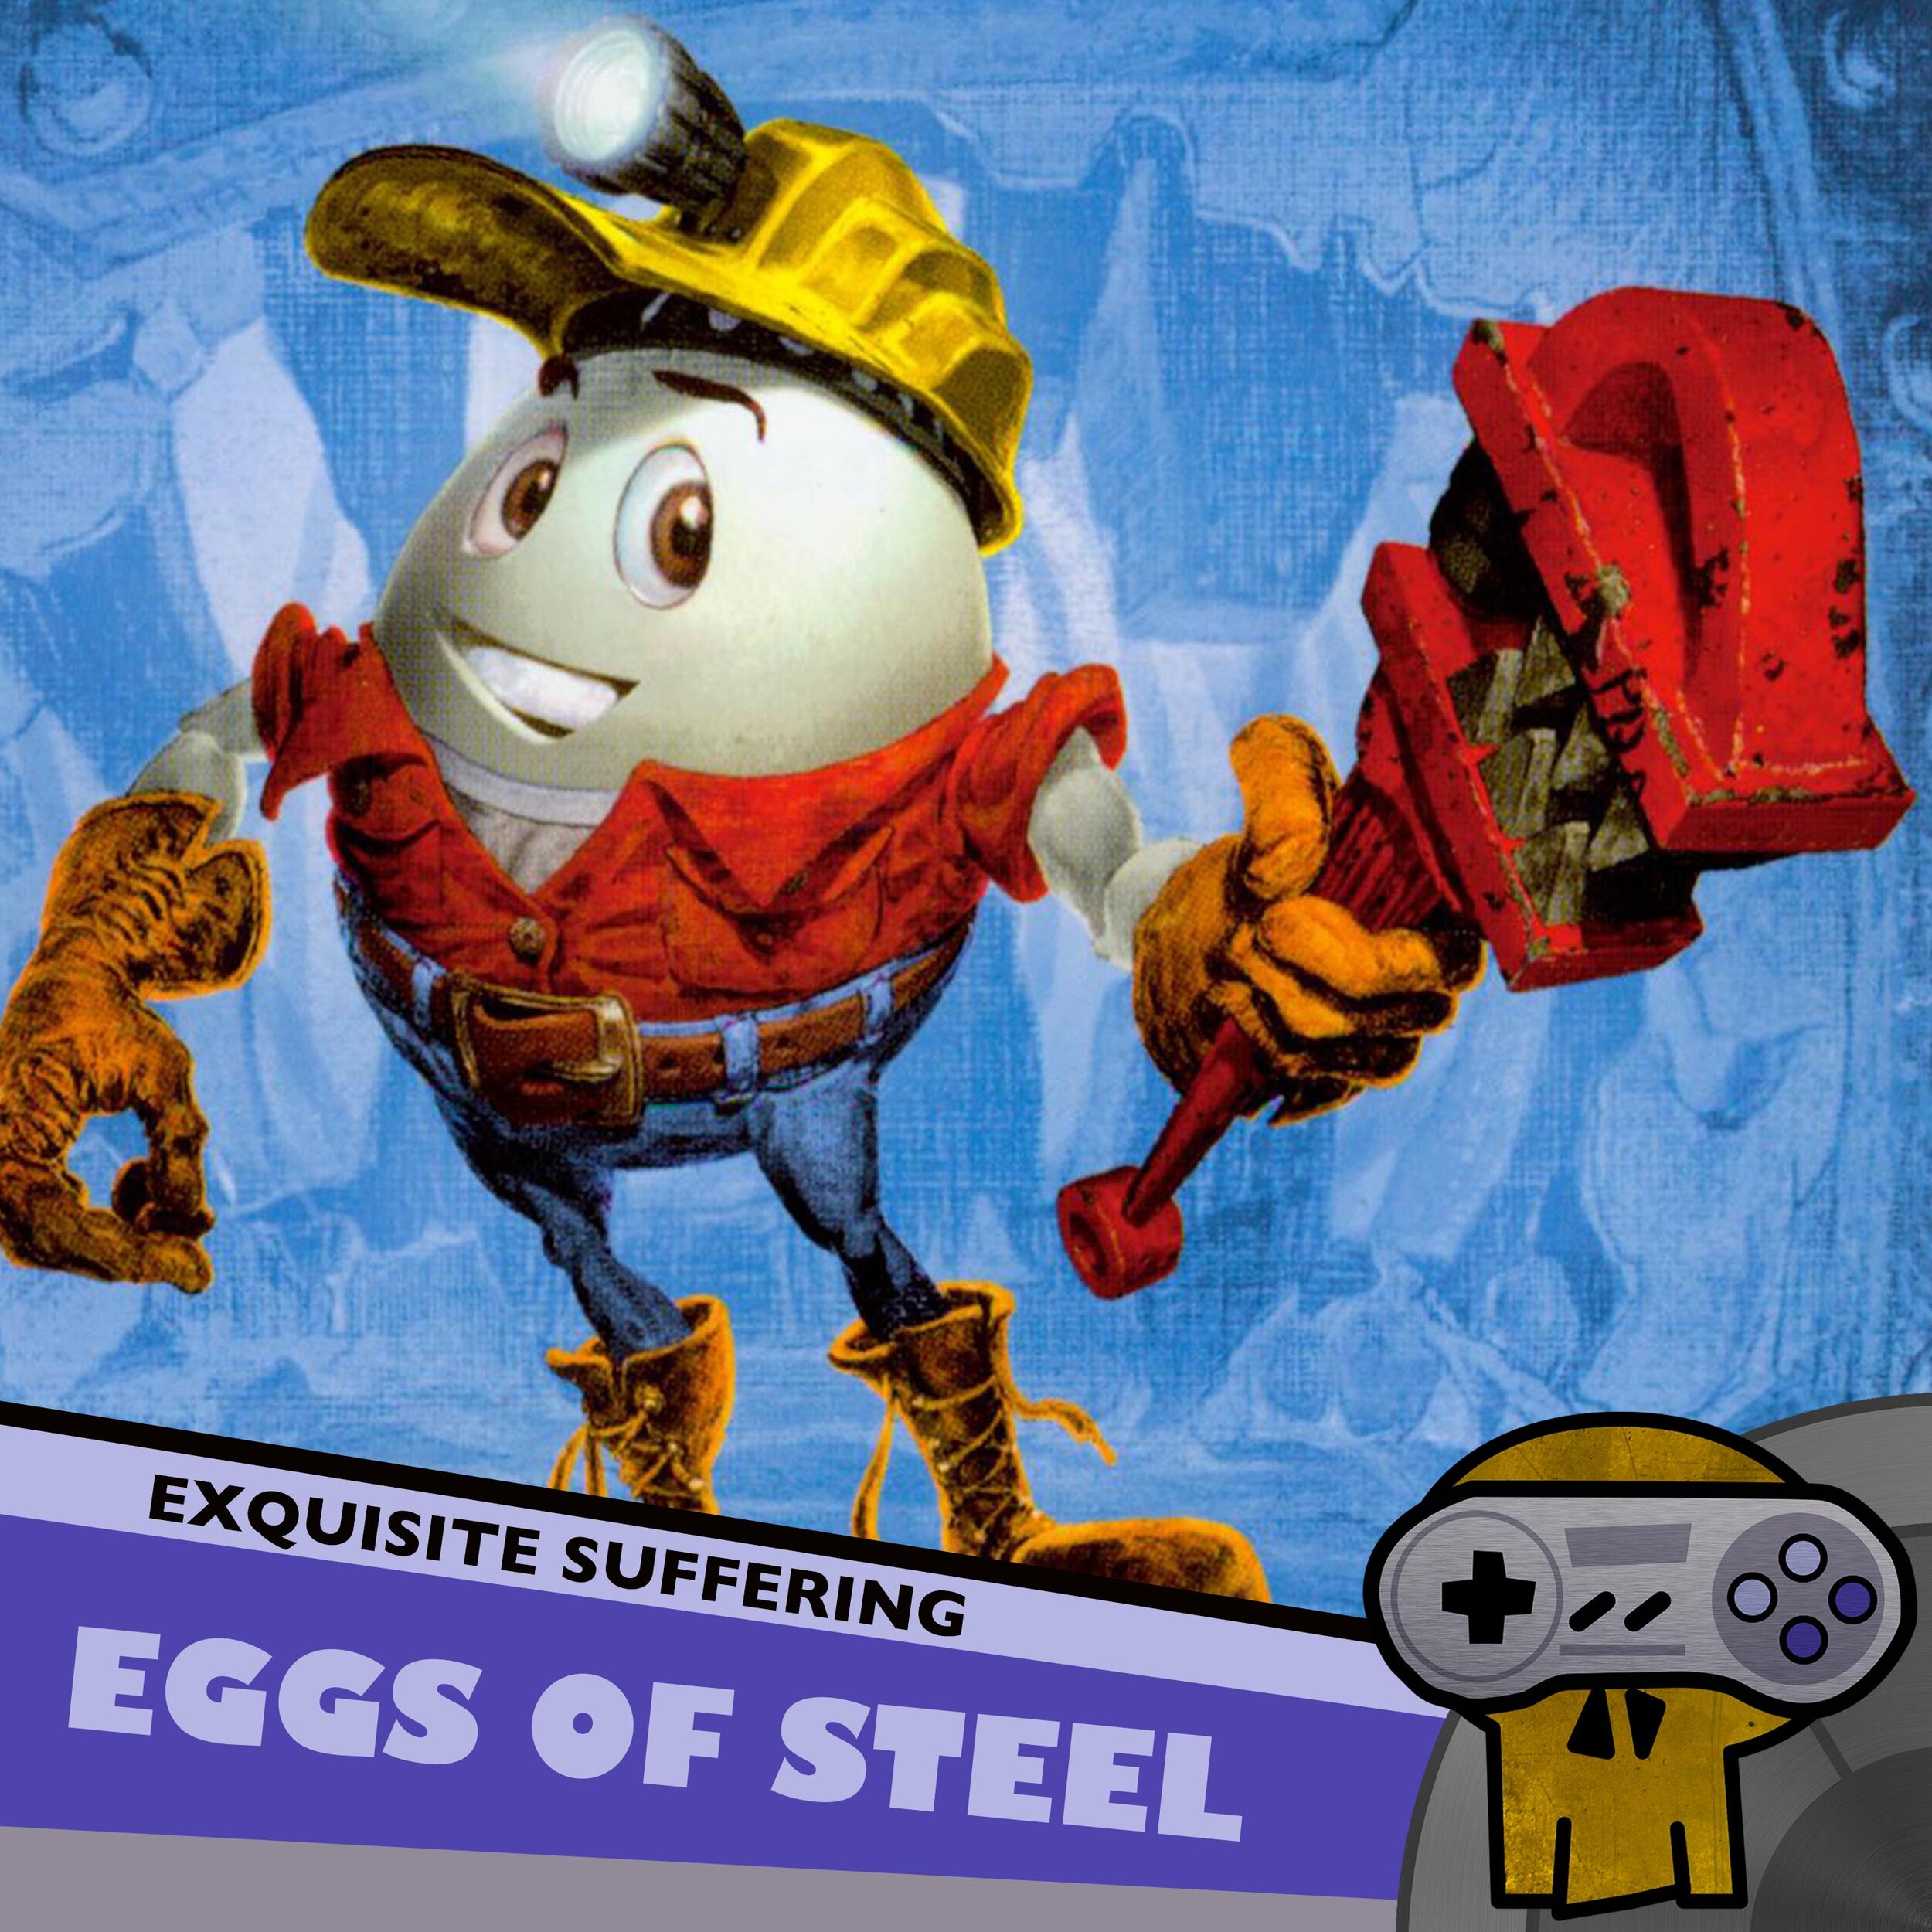 Eggs of Steel